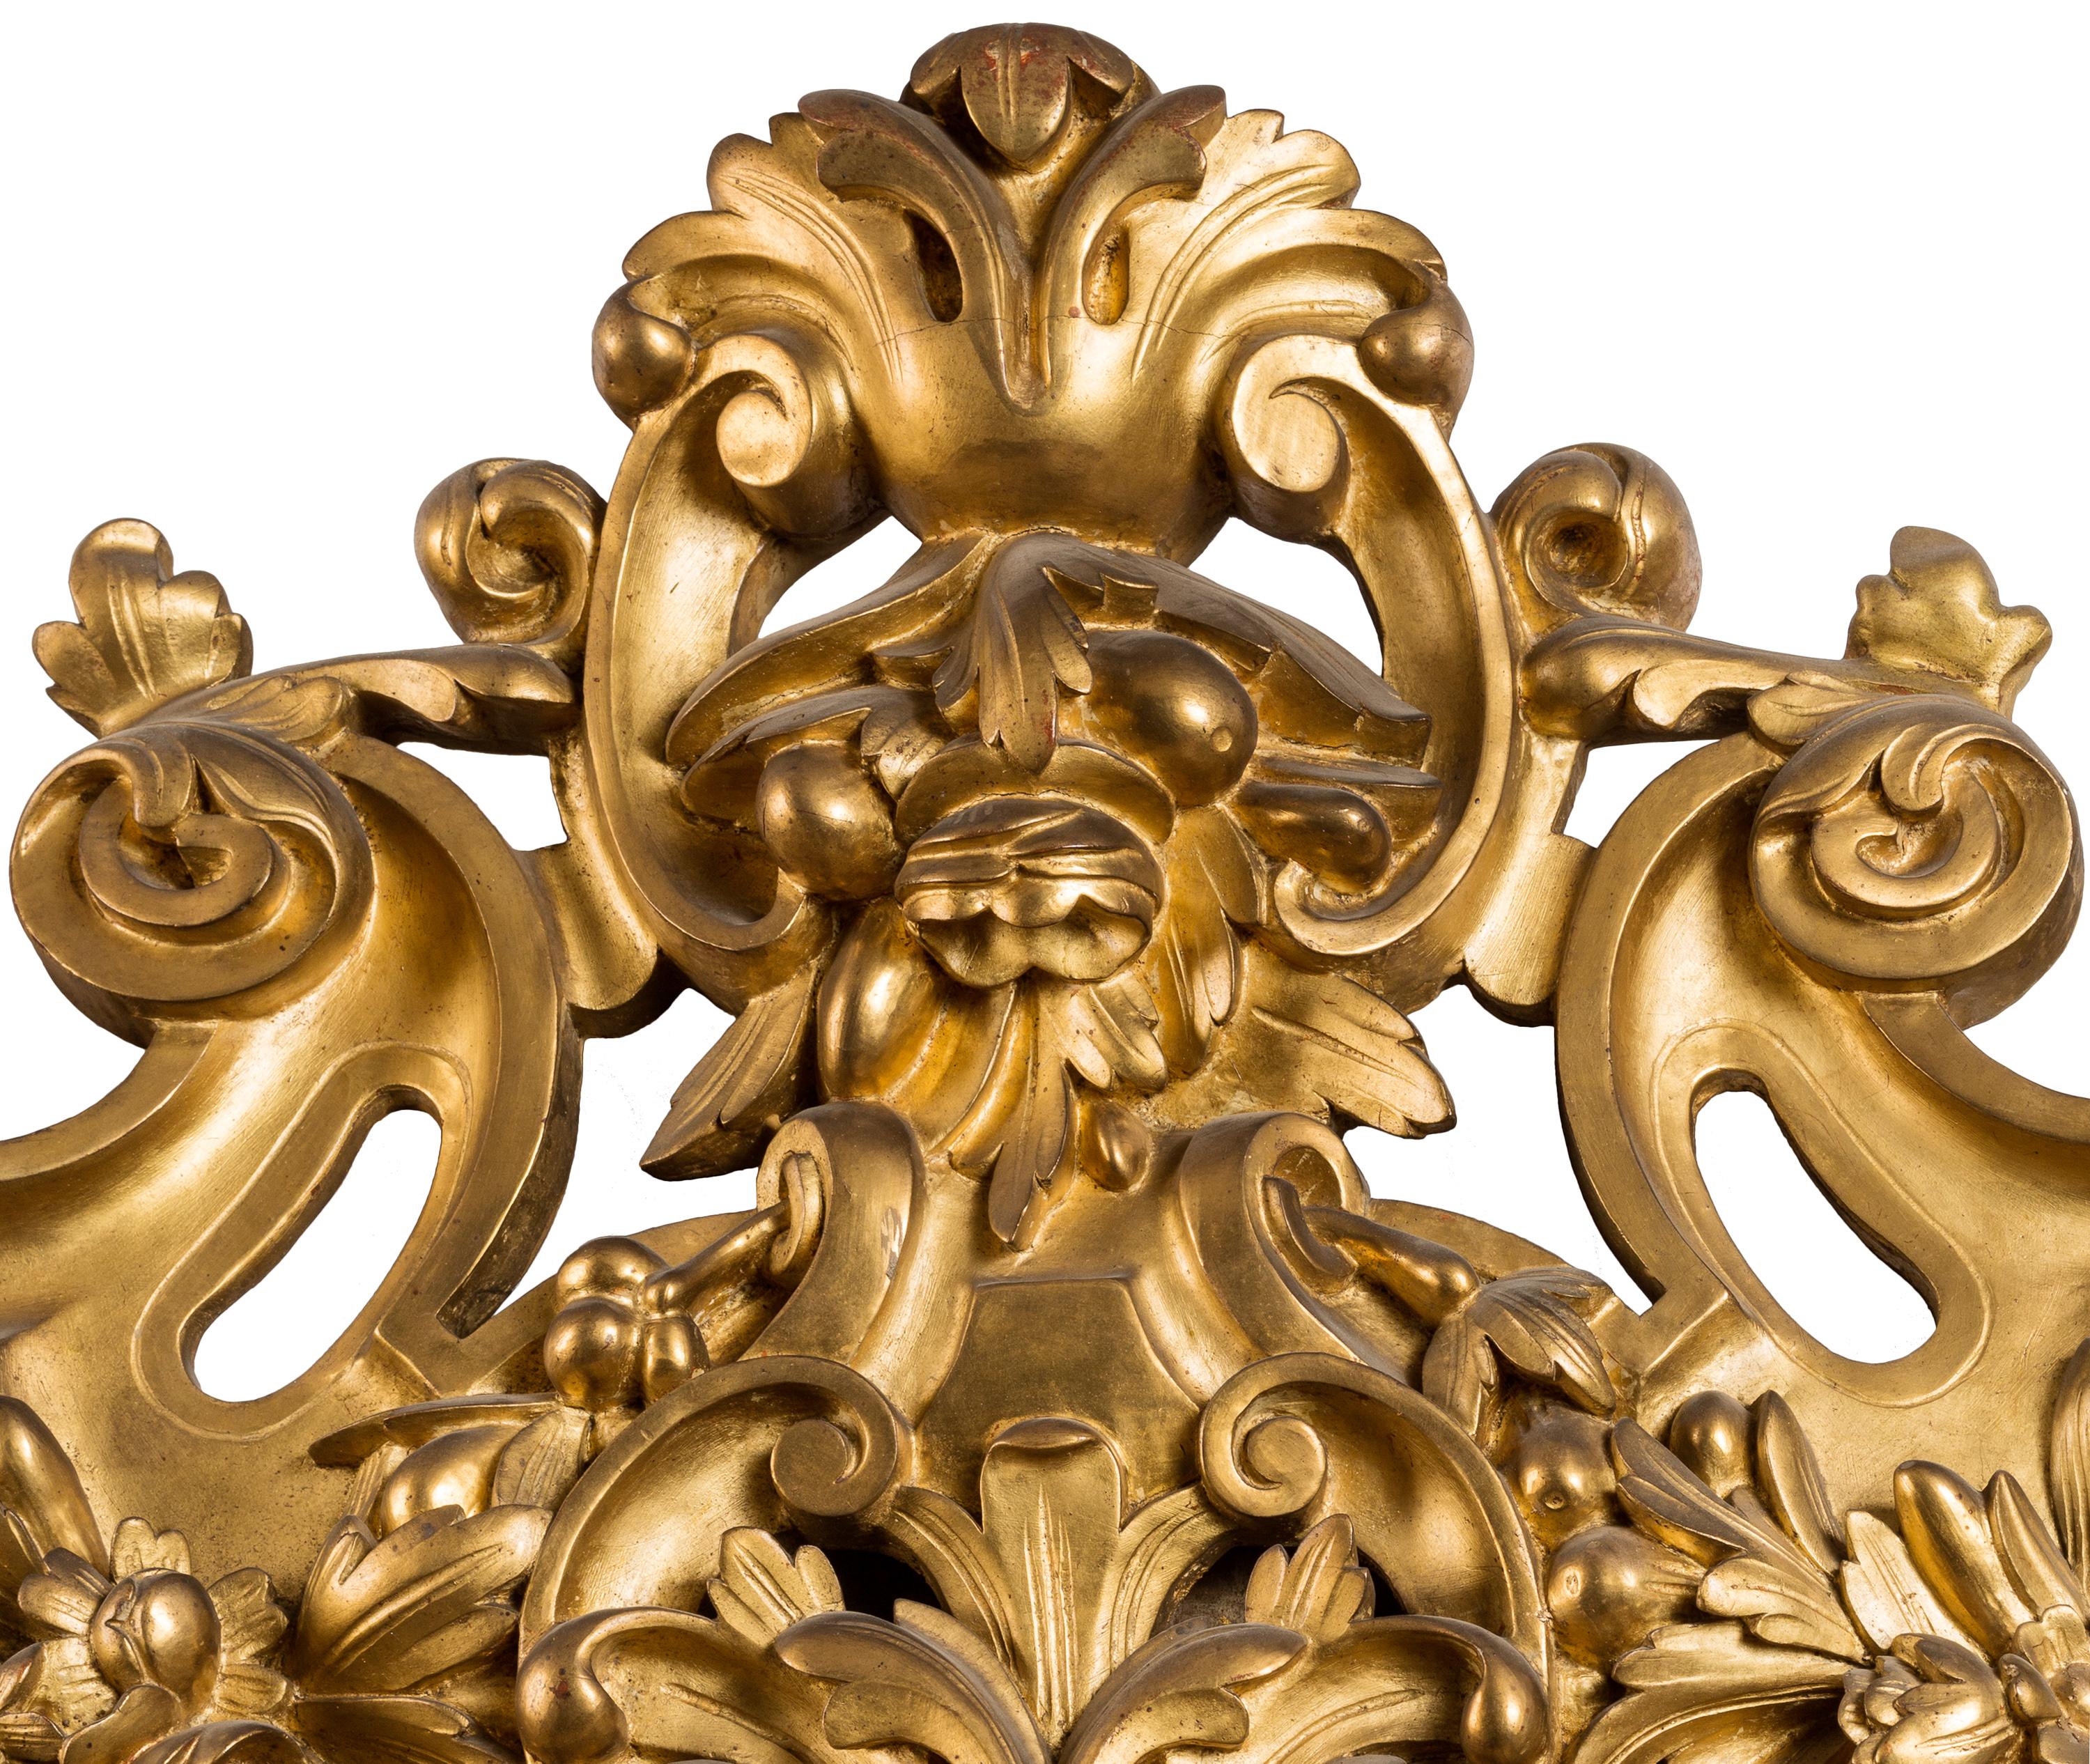 D'une hauteur de deux mètres (ou plus de six pieds et demi), ce miroir en bois doré magnifiquement sculpté de style Louis XIV est un rappel spectaculaire du luxe des châteaux et palais français des XVIIIe et XIXe siècles. Posé sur le sol, accroché